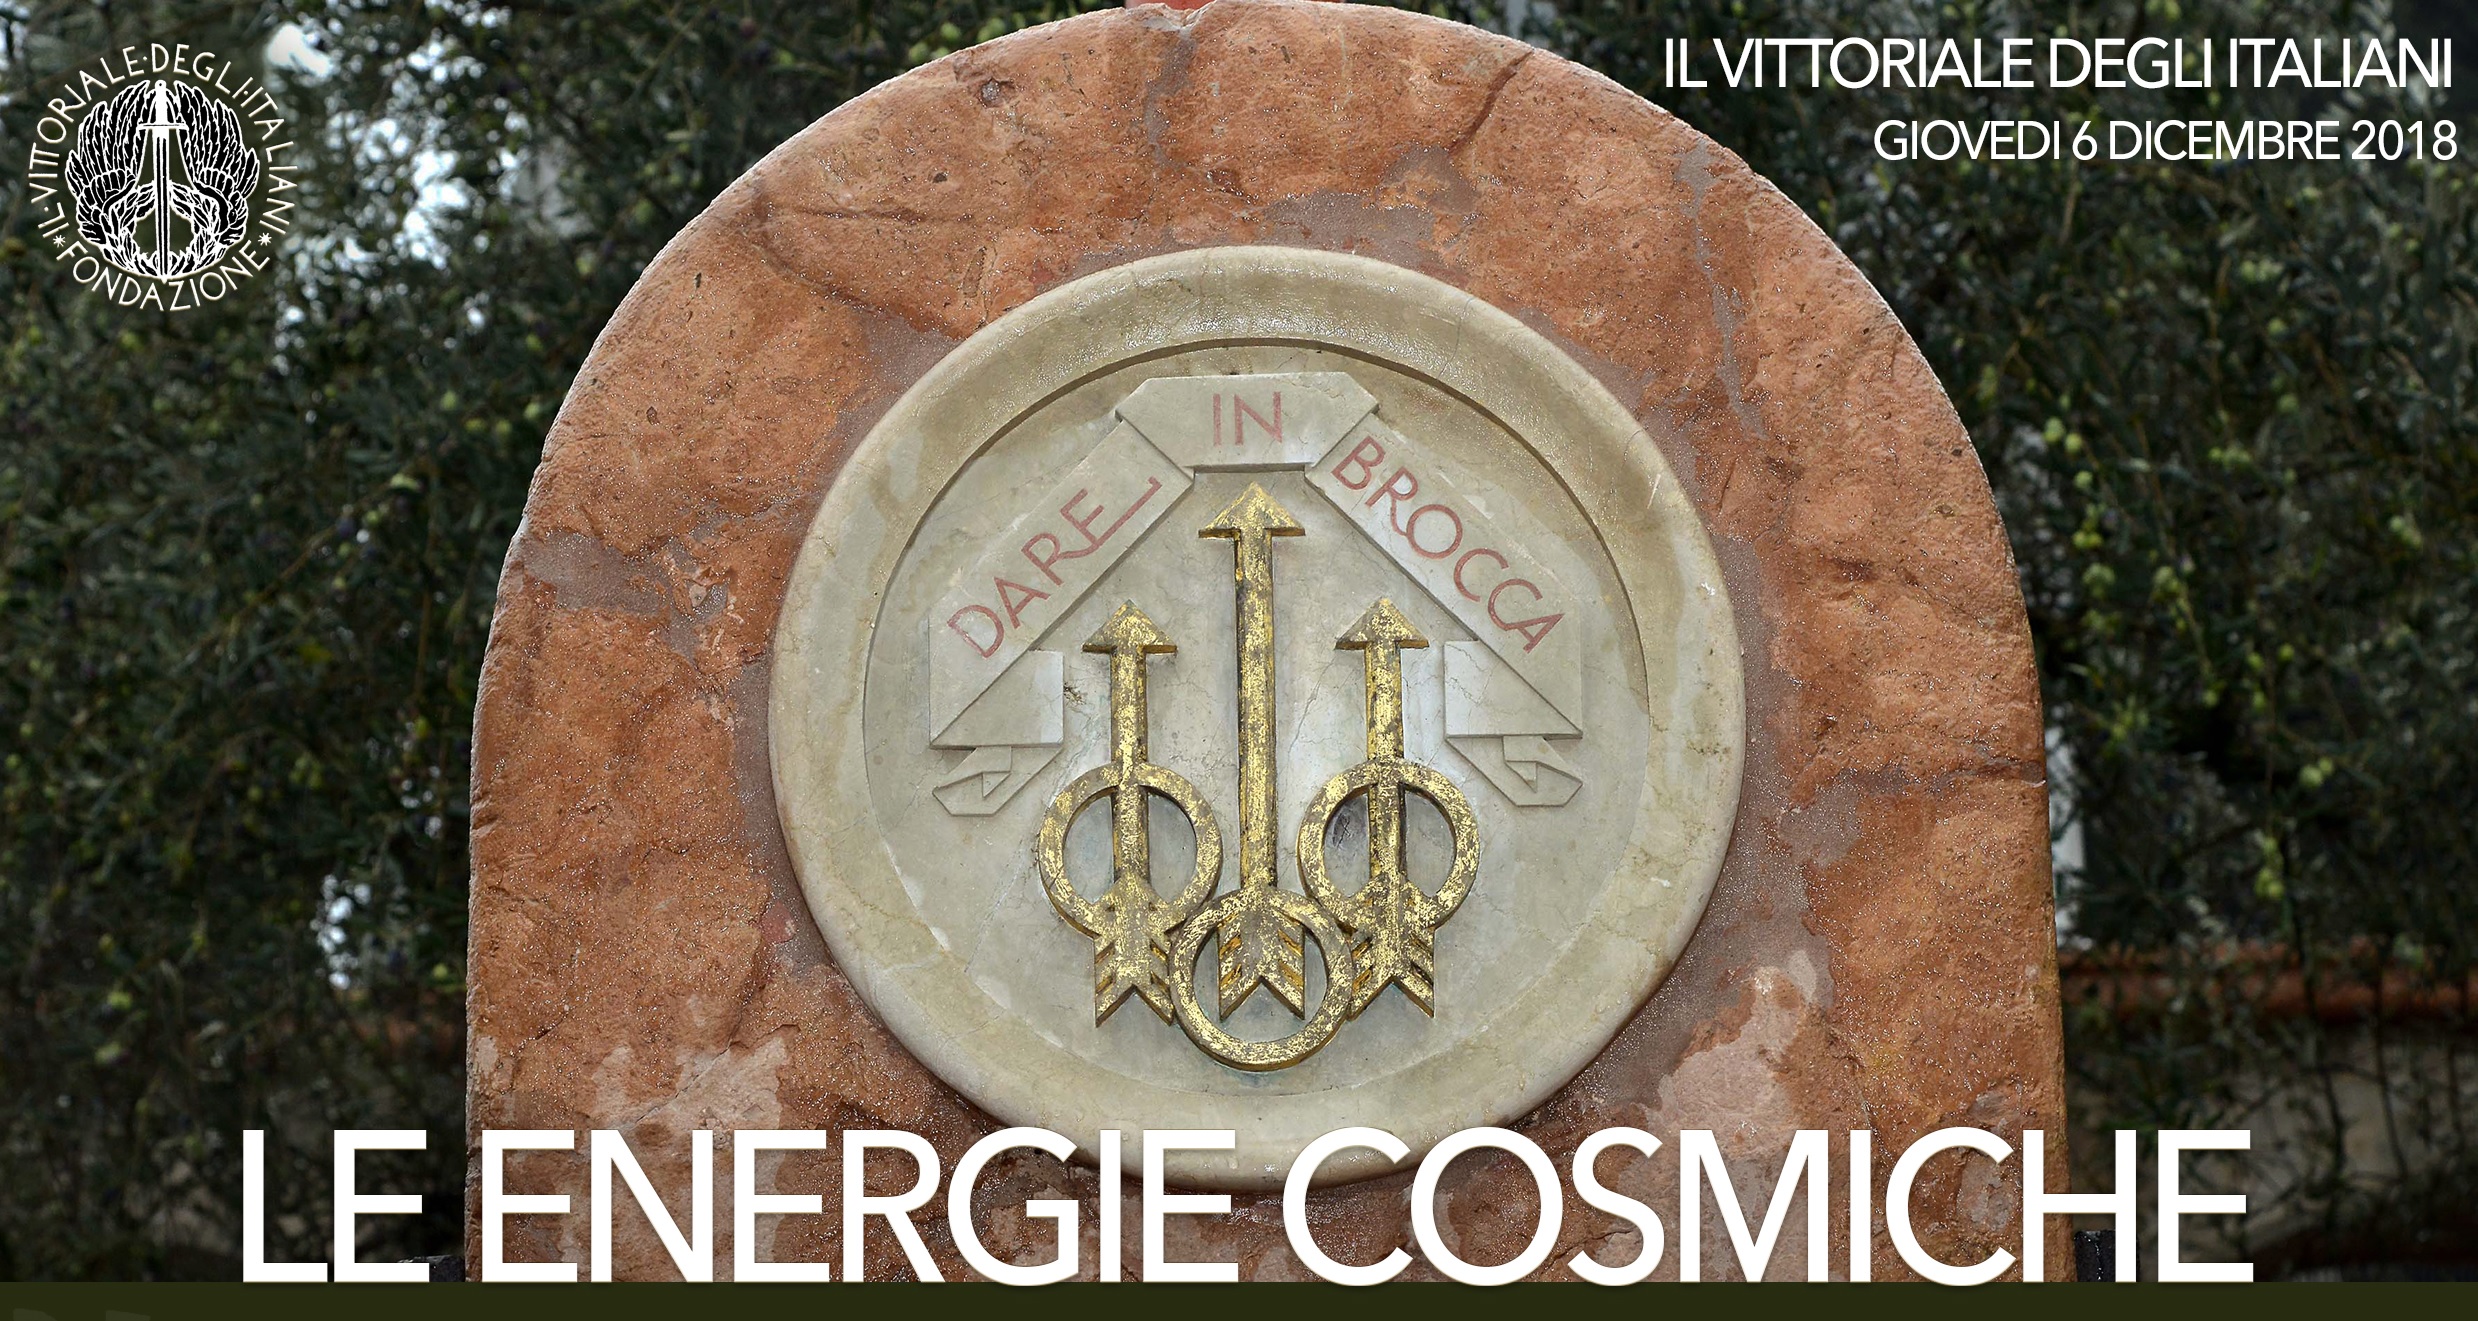 Le energie cosmiche – IX Premio del Vittoriale – giovedì 6 dicembre